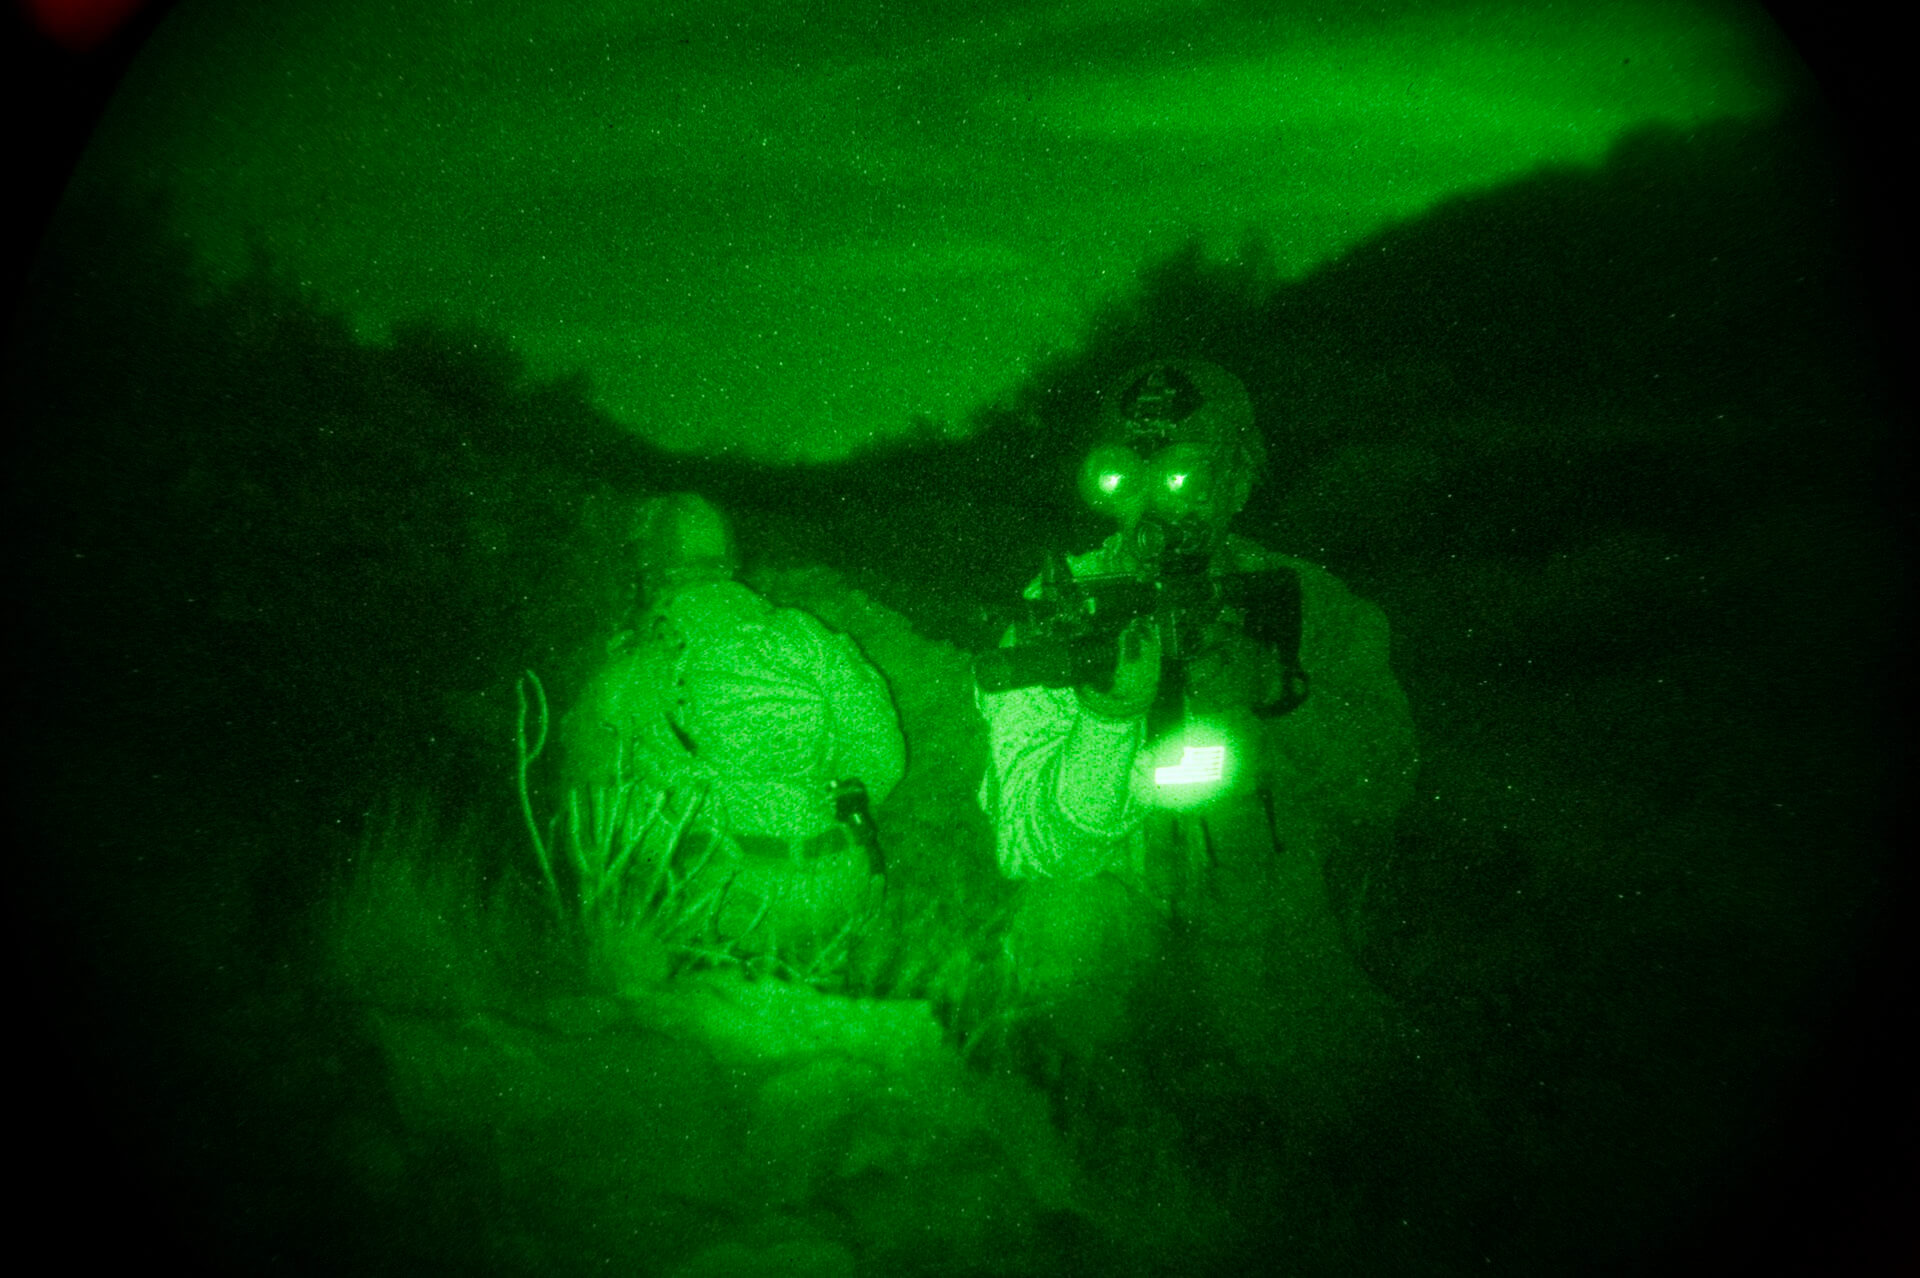 חיילים מיחידת אריות הים של הצי האמריקני משתמשים באמצעי ראיית לילה. התמונה נראית ירוקה. צילום: מתוך ויקיפדיה